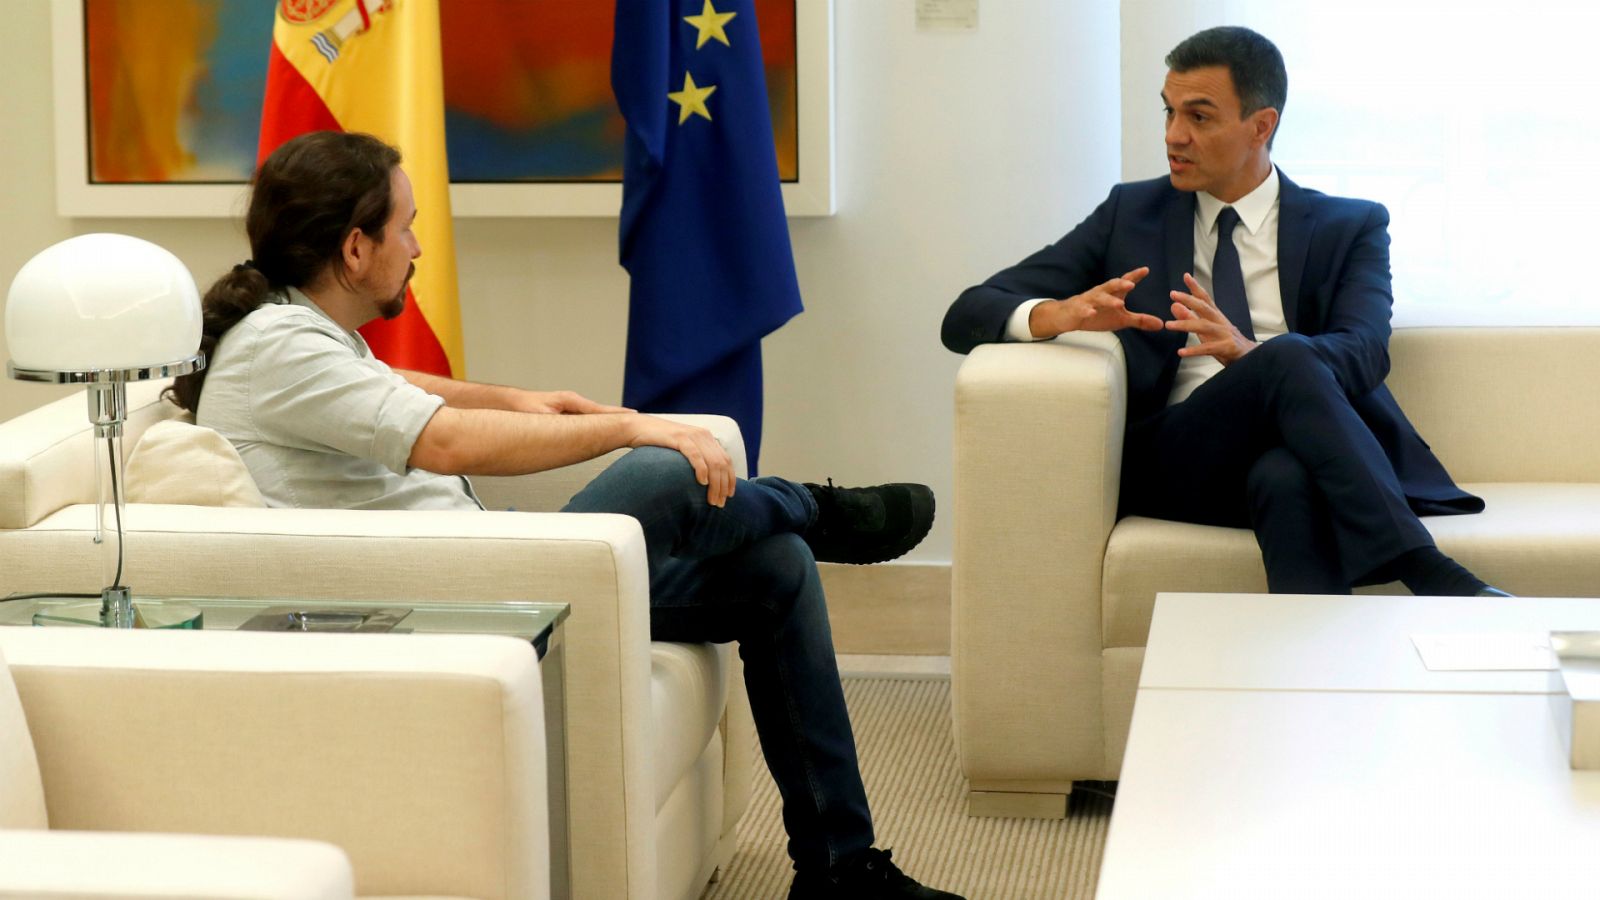 14 horas - PSOE y Unidas Podemos se reúnen para comenzar a negociar los Presupuestos - Escuchar ahora